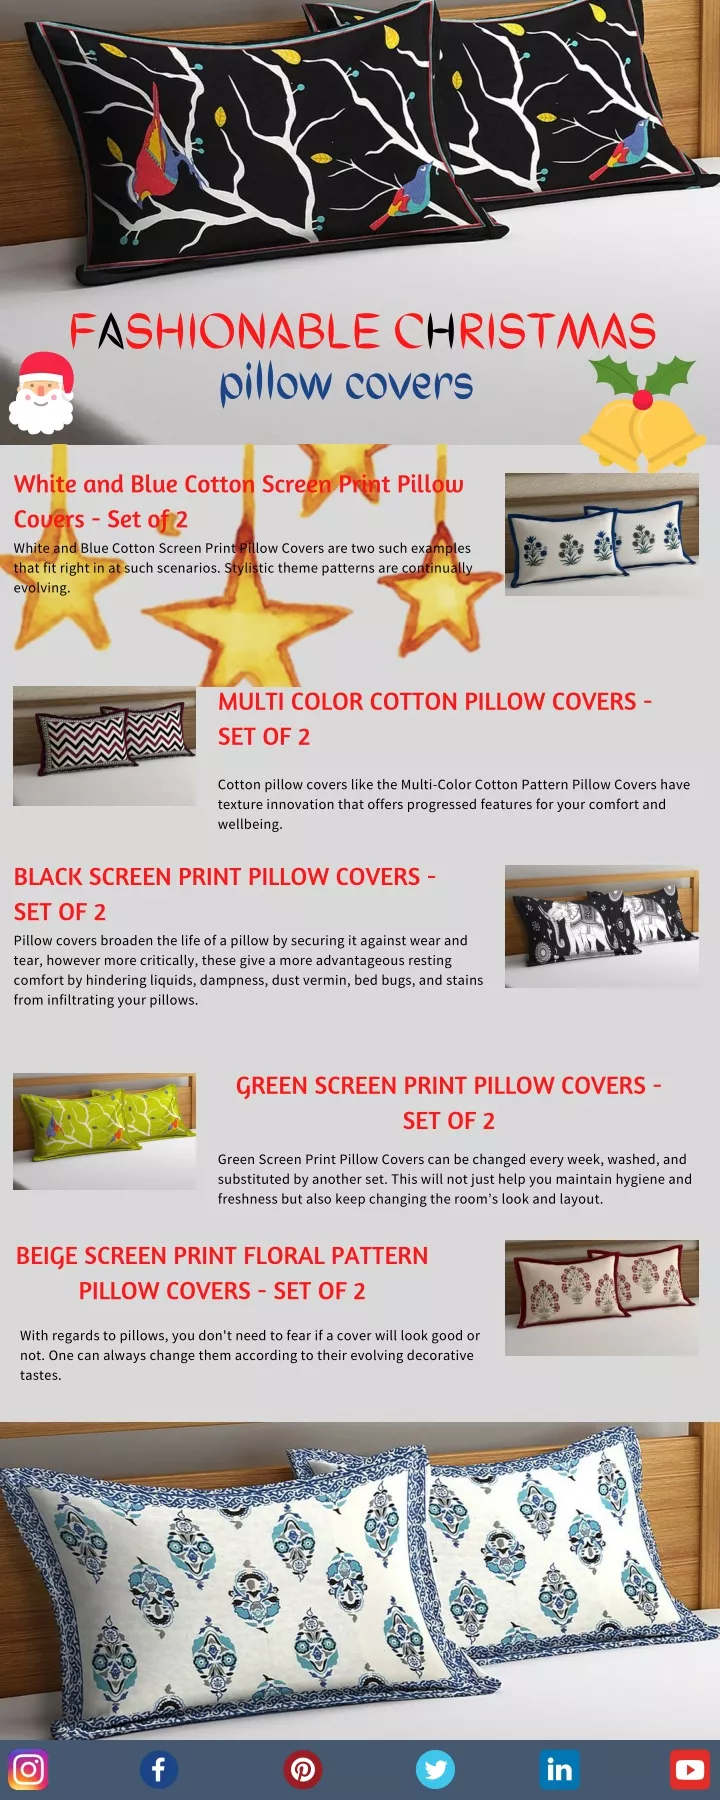 fashionable christmas pillow covers